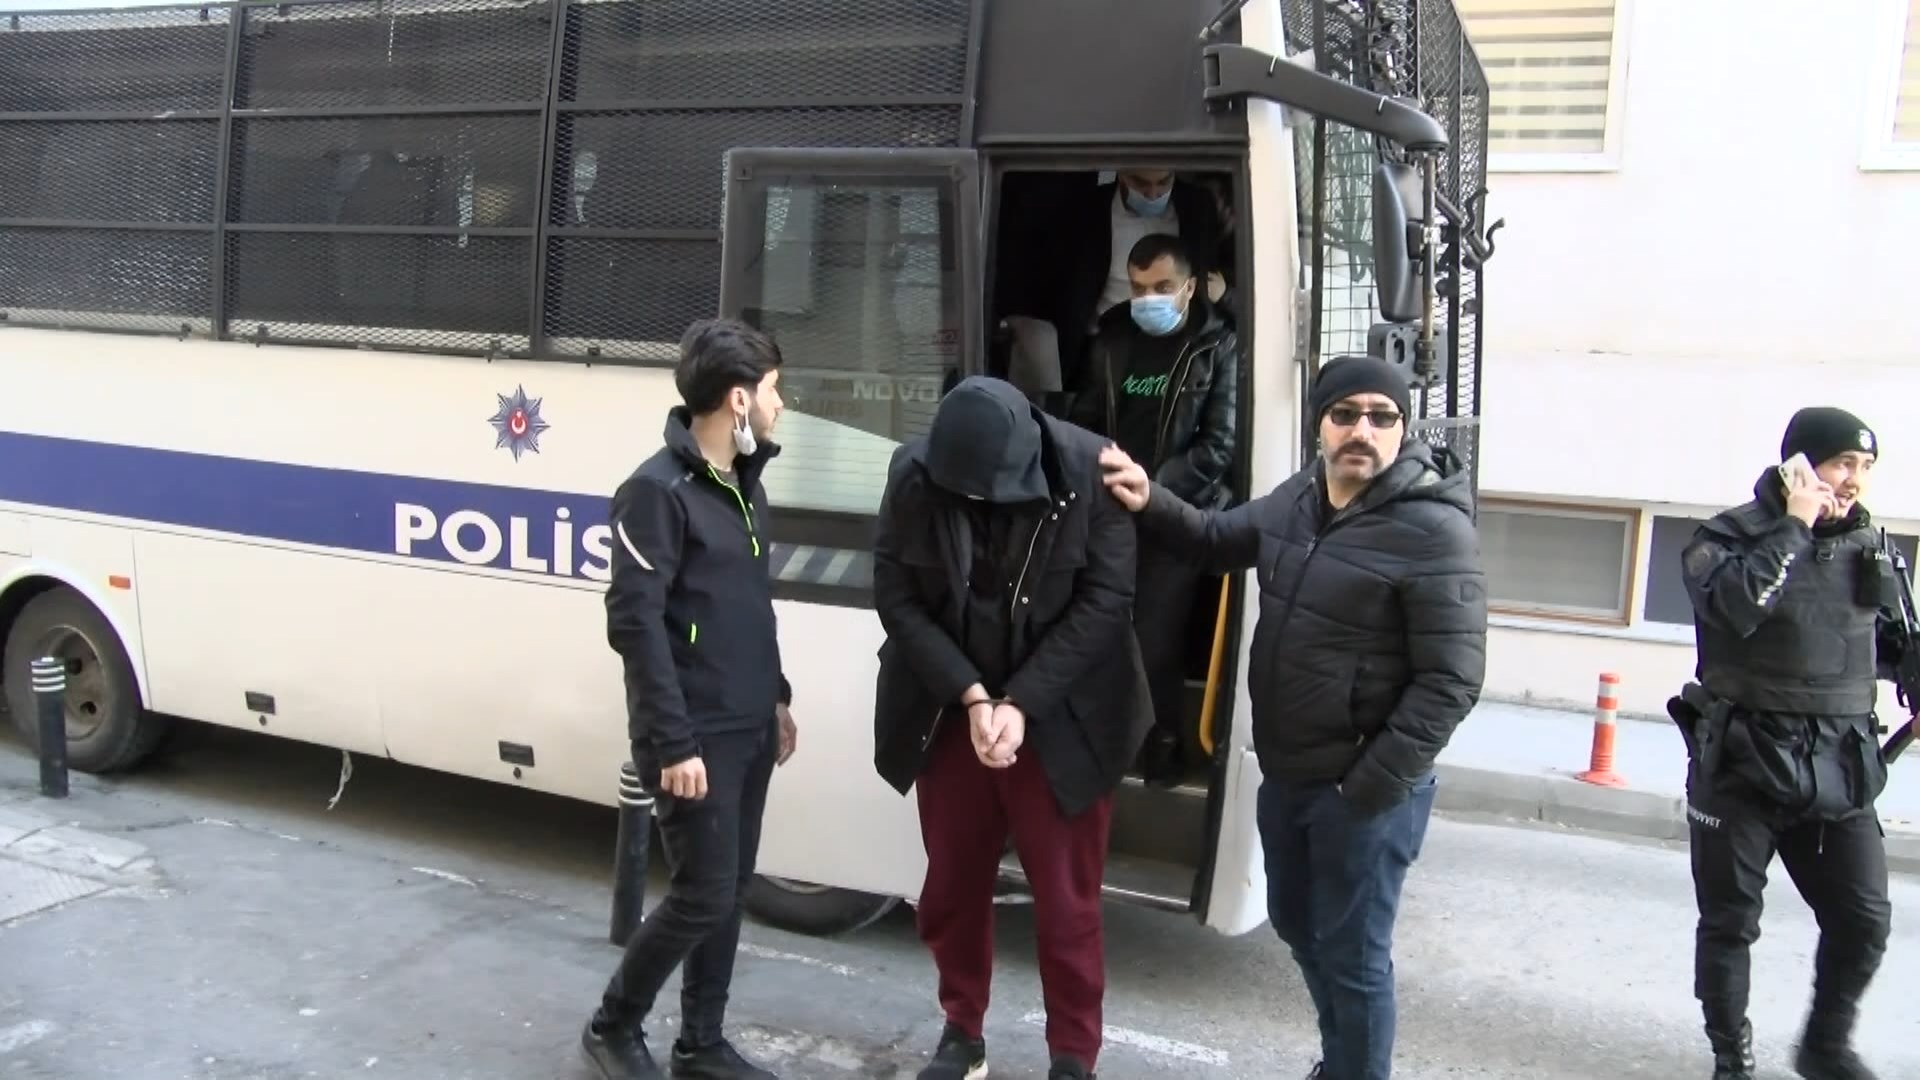 Mahmutyazıcıoğlu cinayeti şüphelisinin ifadesi:  "Bize 5 dakika bekleyin’ dedi, bu tavır canımızı sıktı”